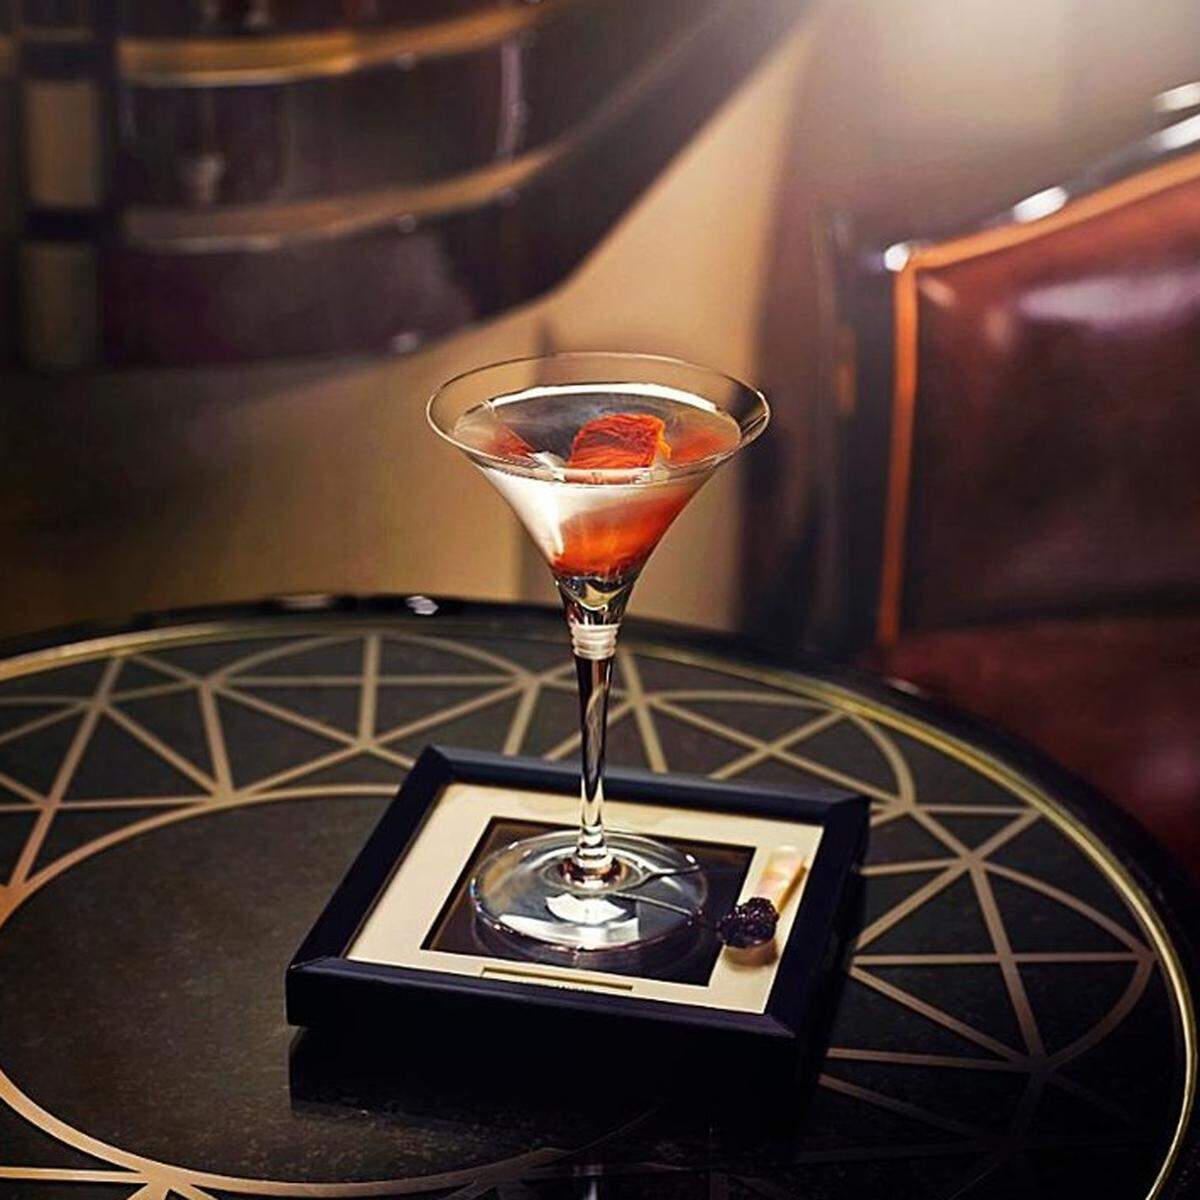 2017 war die American Bar im Londoner Savoy Hotel noch auf Platz eins zu finden, dann verließ Chef-Barkeeper Erik Lorincz die Bar. "Die American Bar im Savoy in London ist ein Denkmal für Mixgetränke, deren klassischer und schwerverdienter Status seit fast 130 Jahren kultiviert wird, indem man das Große und Gute serviert."